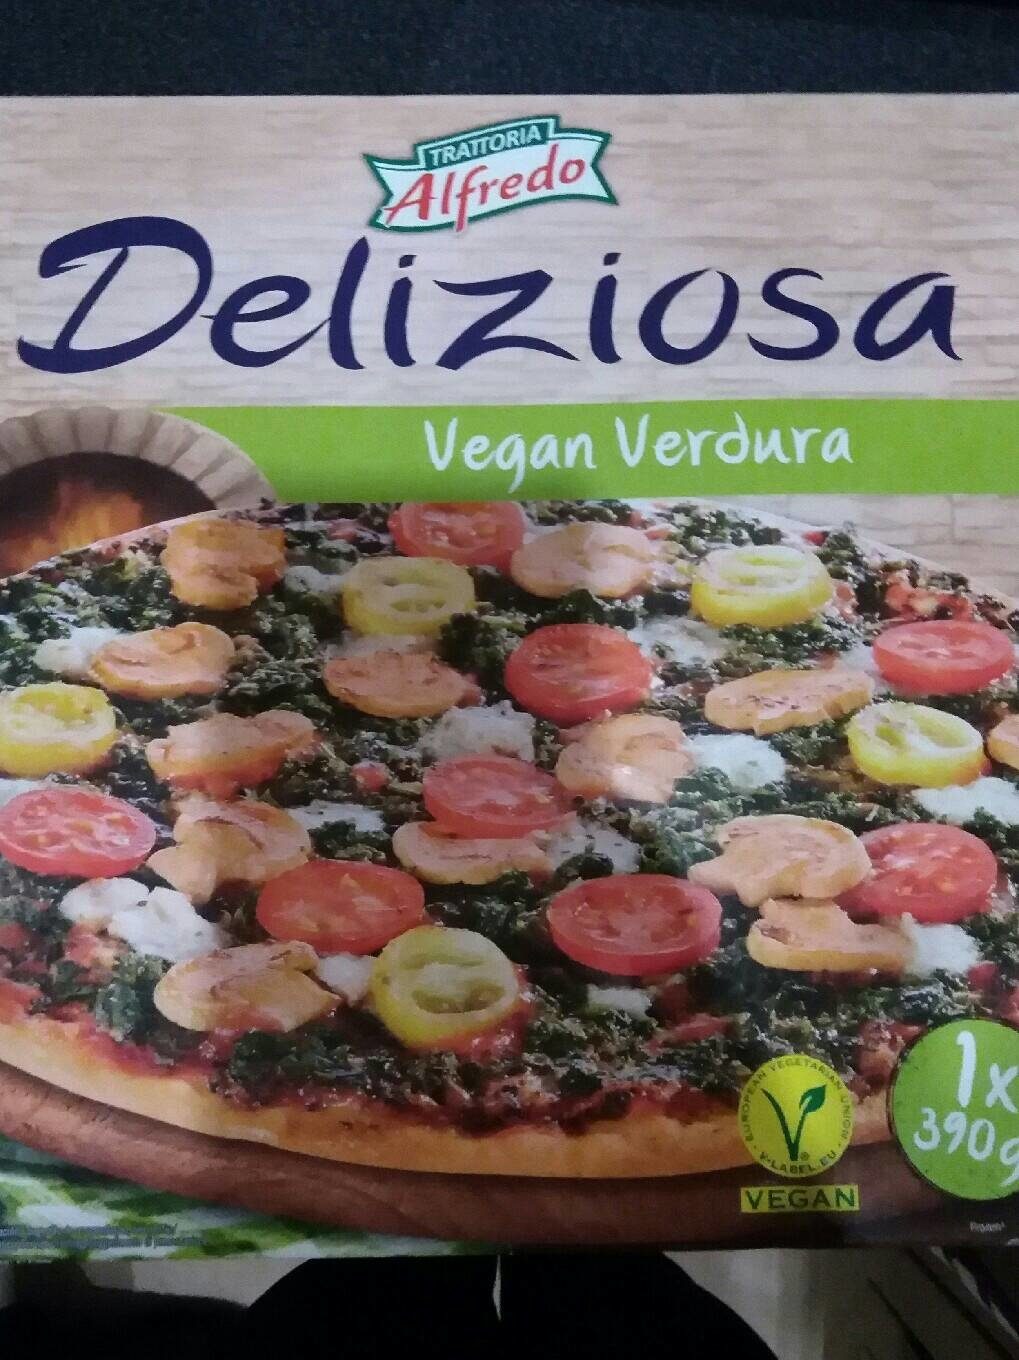 Trattoria Alfredo Pizza Deliziosa Vegan Verdura - Product - fr